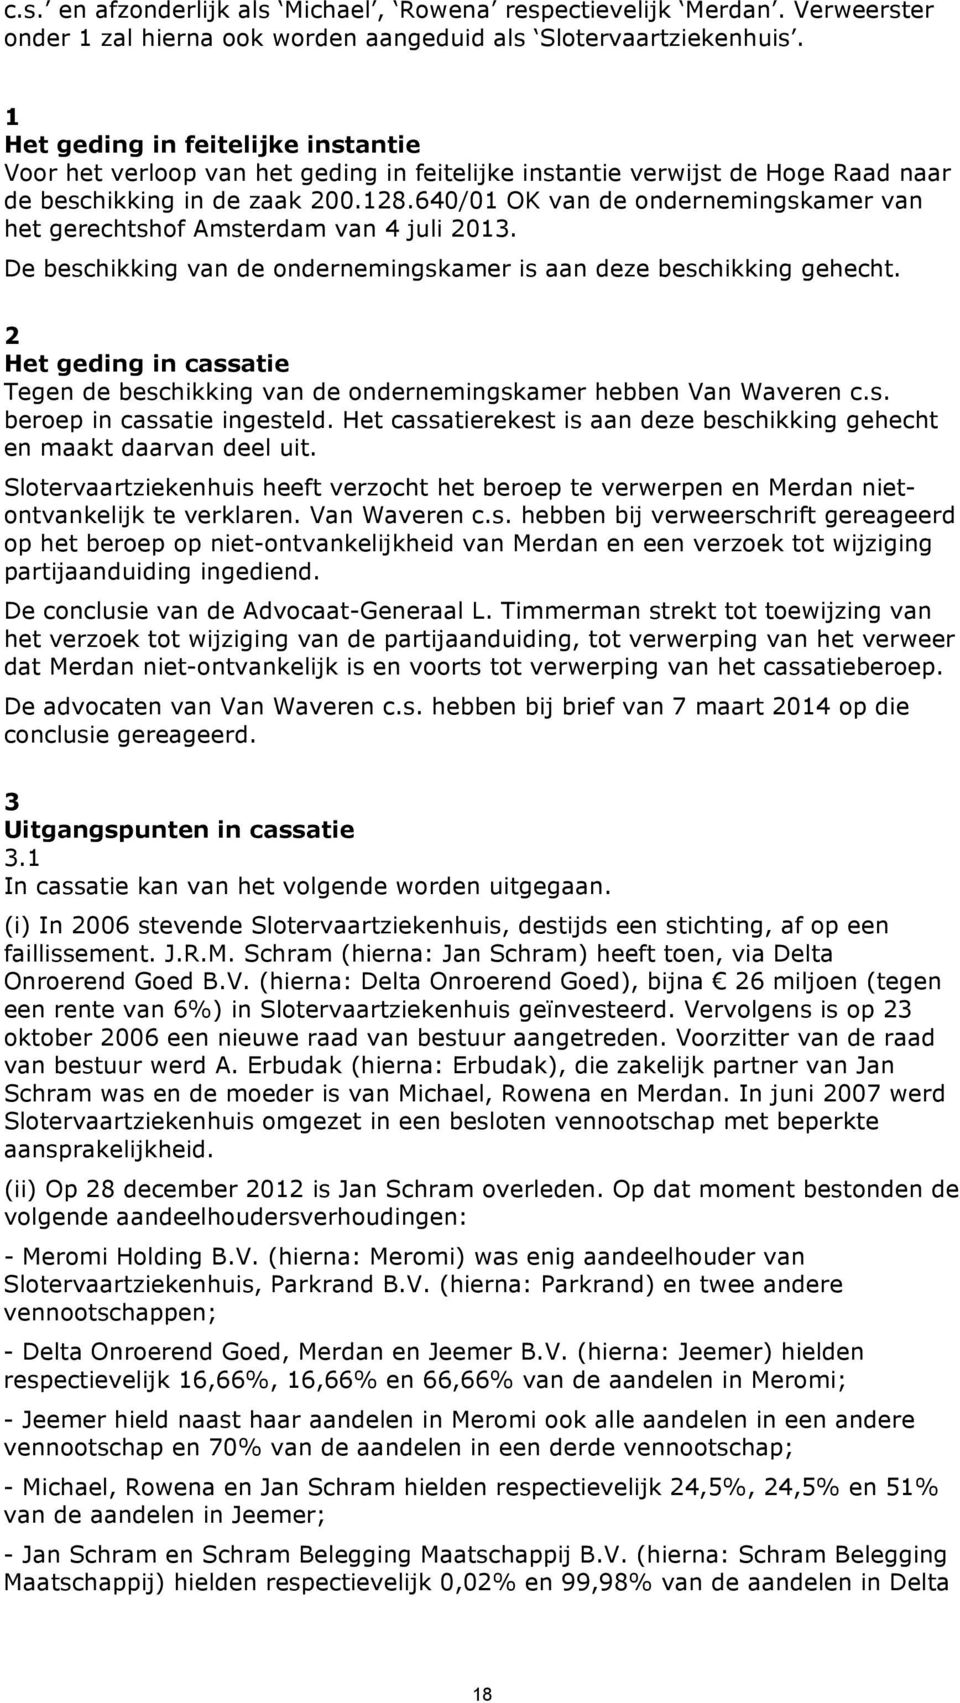 640/01 OK van de ondernemingskamer van het gerechtshof Amsterdam van 4 juli 2013. De beschikking van de ondernemingskamer is aan deze beschikking gehecht.